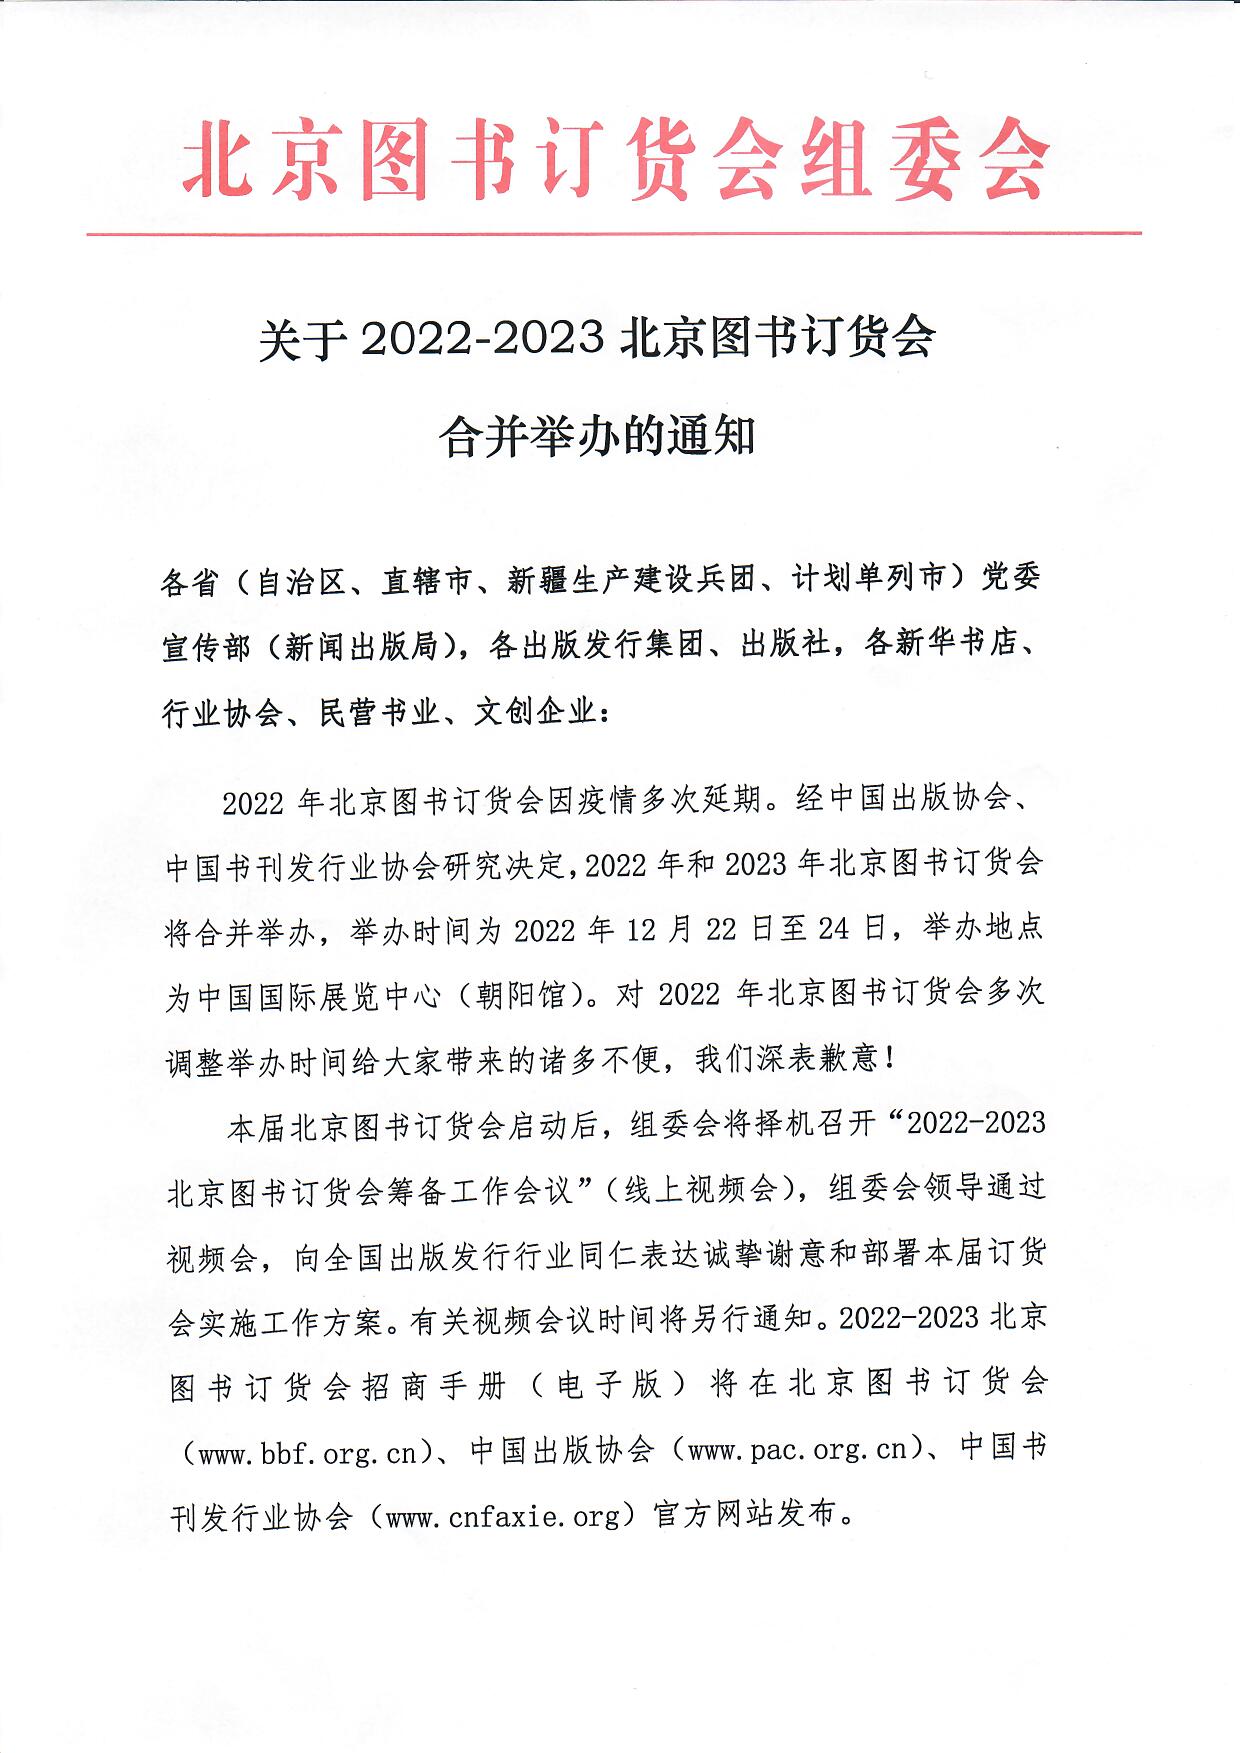 关于2022-2023北京图书订货会合并举办的通知_页面_1.jpg